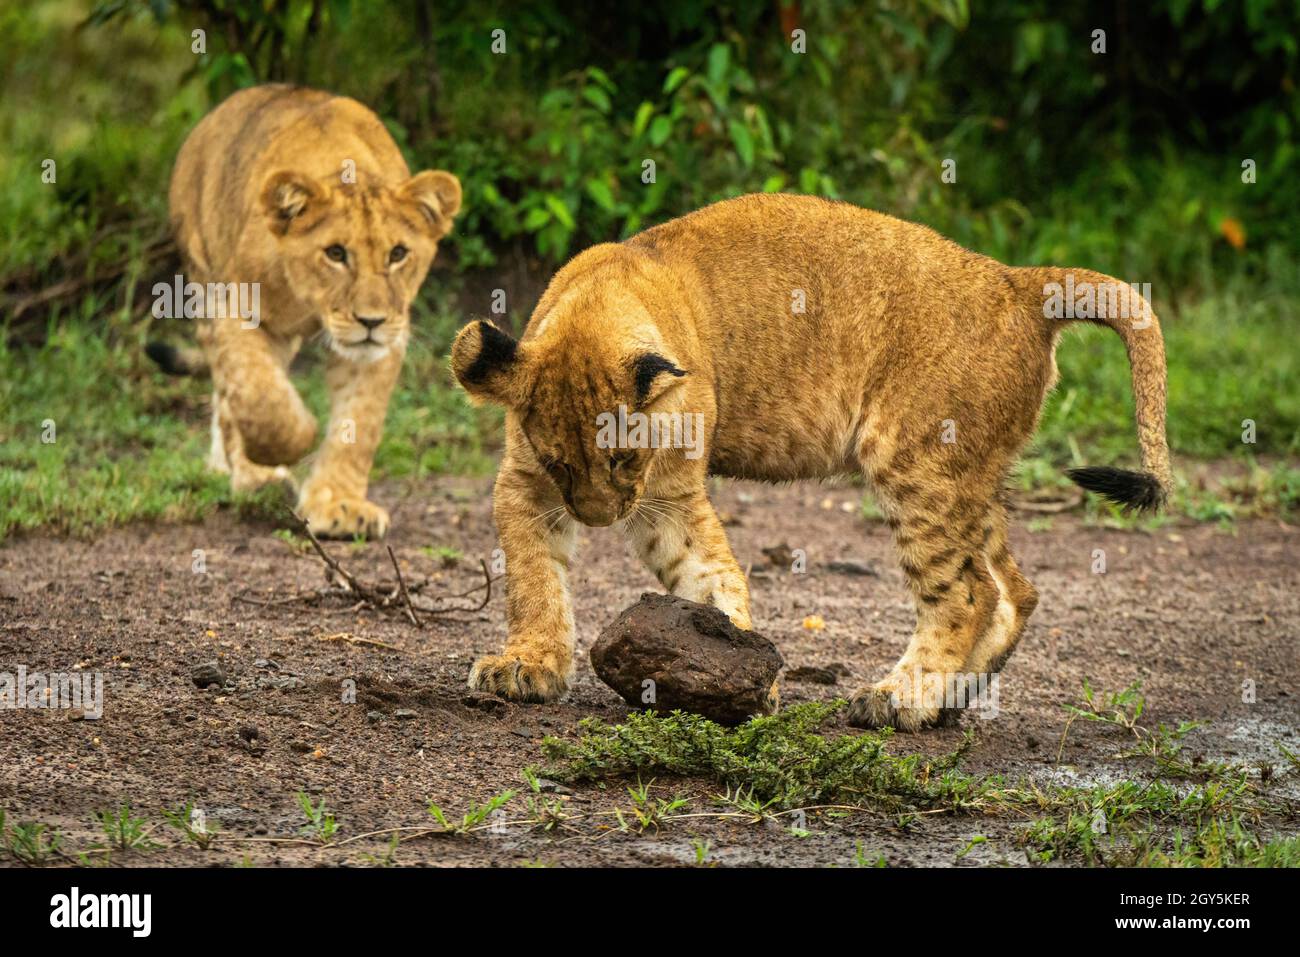 El cachorro de león acecha a otro jugando con piedra Foto de stock